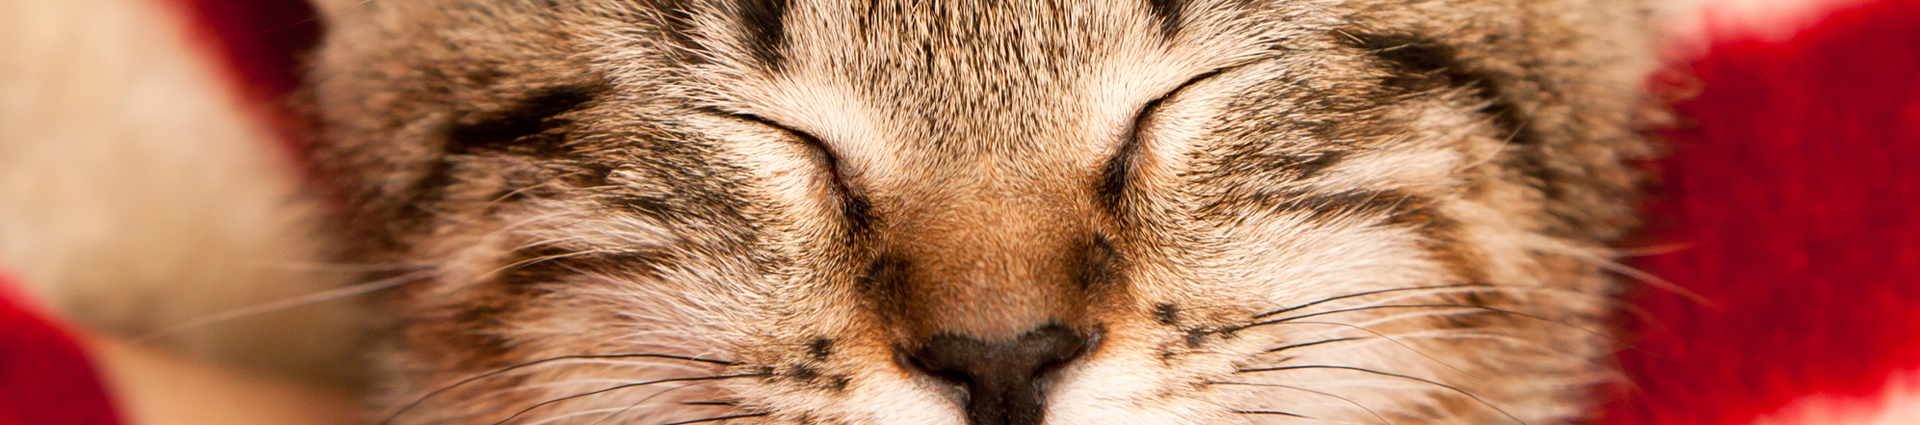 תקריב של עיני חתול עצומות